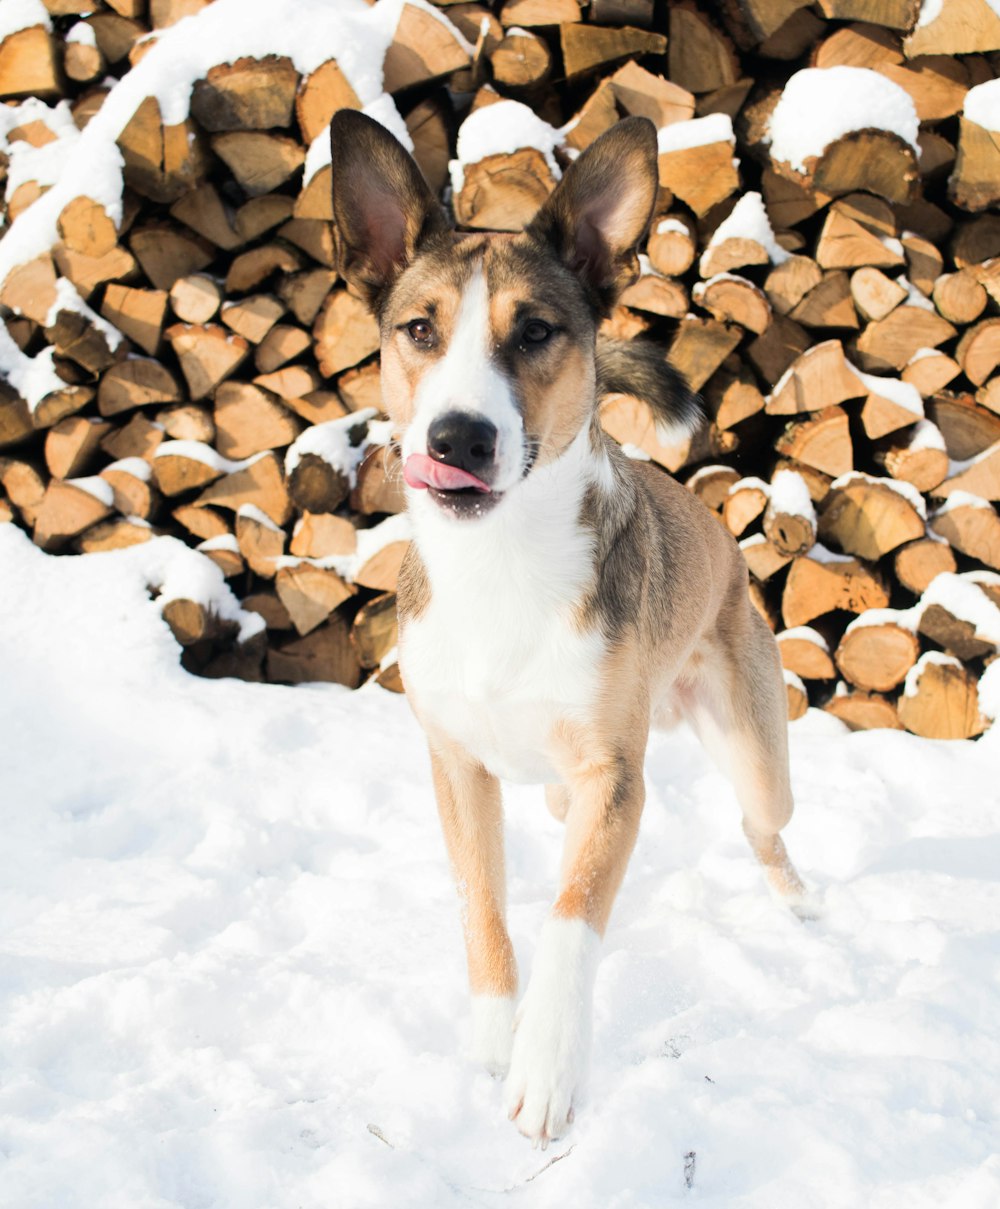 Perro de pelo corto marrón y blanco en suelo cubierto de nieve